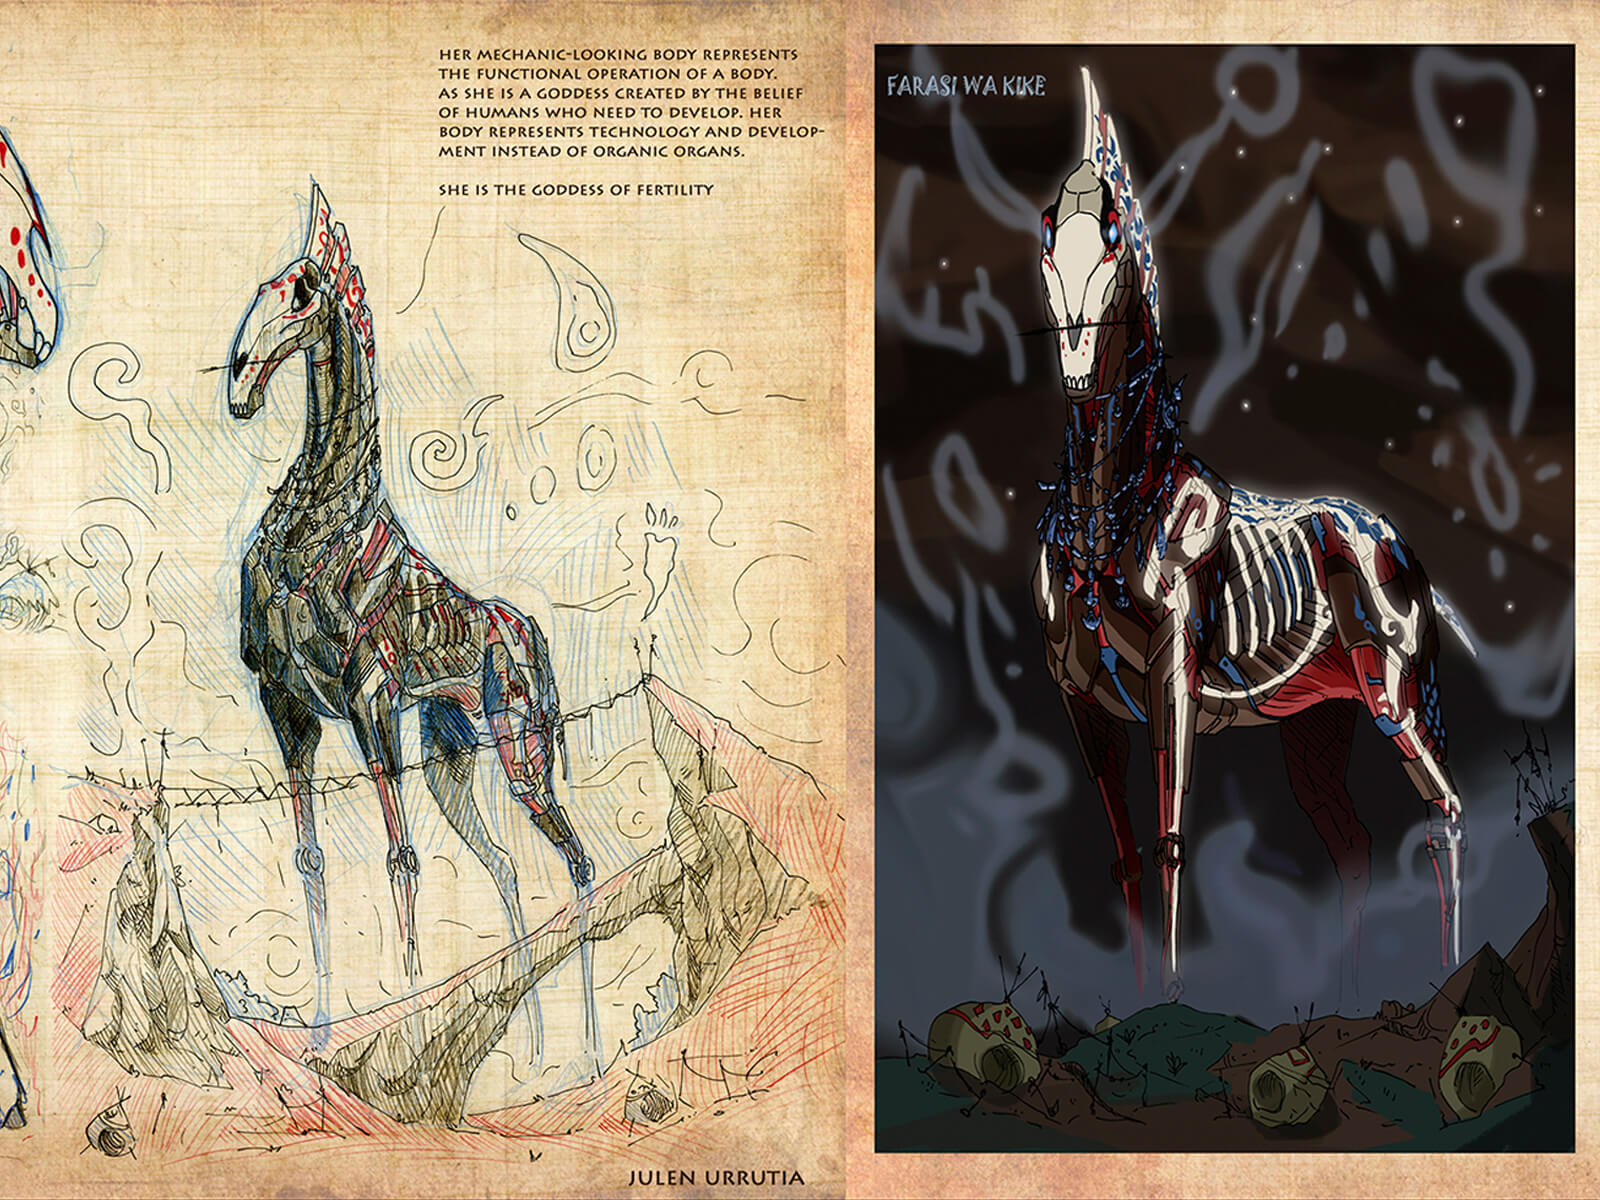 Arte conceptual de un caballo esquelético-mecánico adornado en rojo, blanco y azul y chamanes de color rojo con atuendos antiguos.